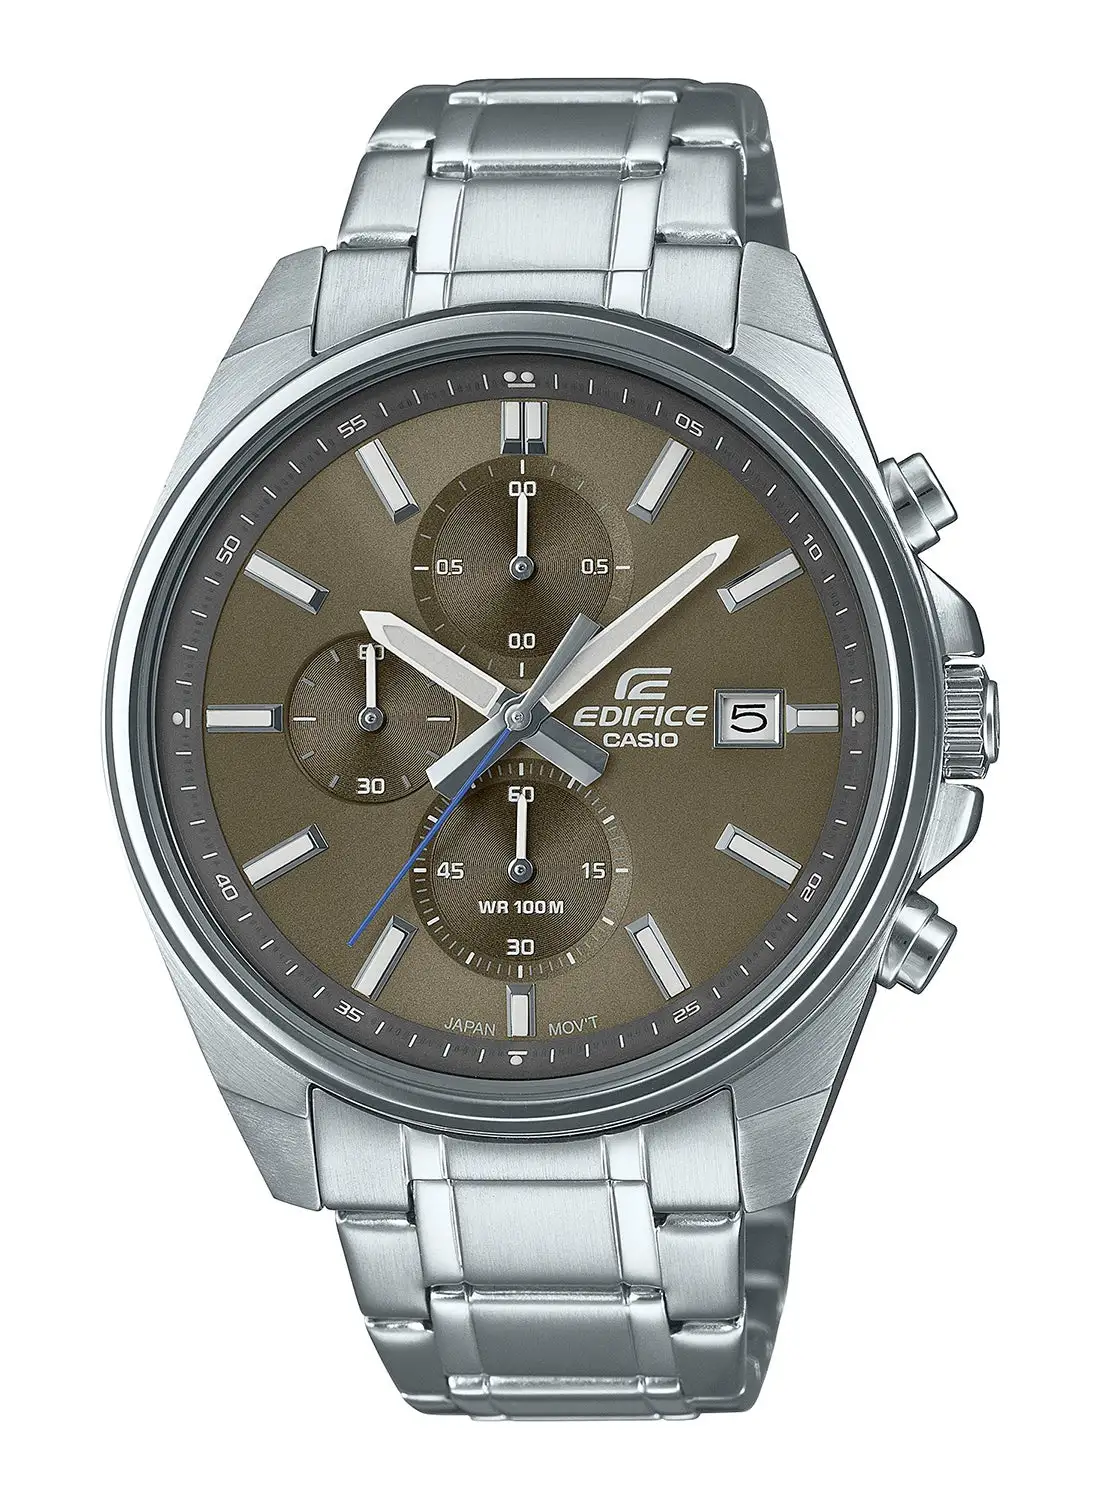 CASIO Men's Analog Stainless Steel Wrist Watch EFV-610D-5CVUDF - 42 Mm